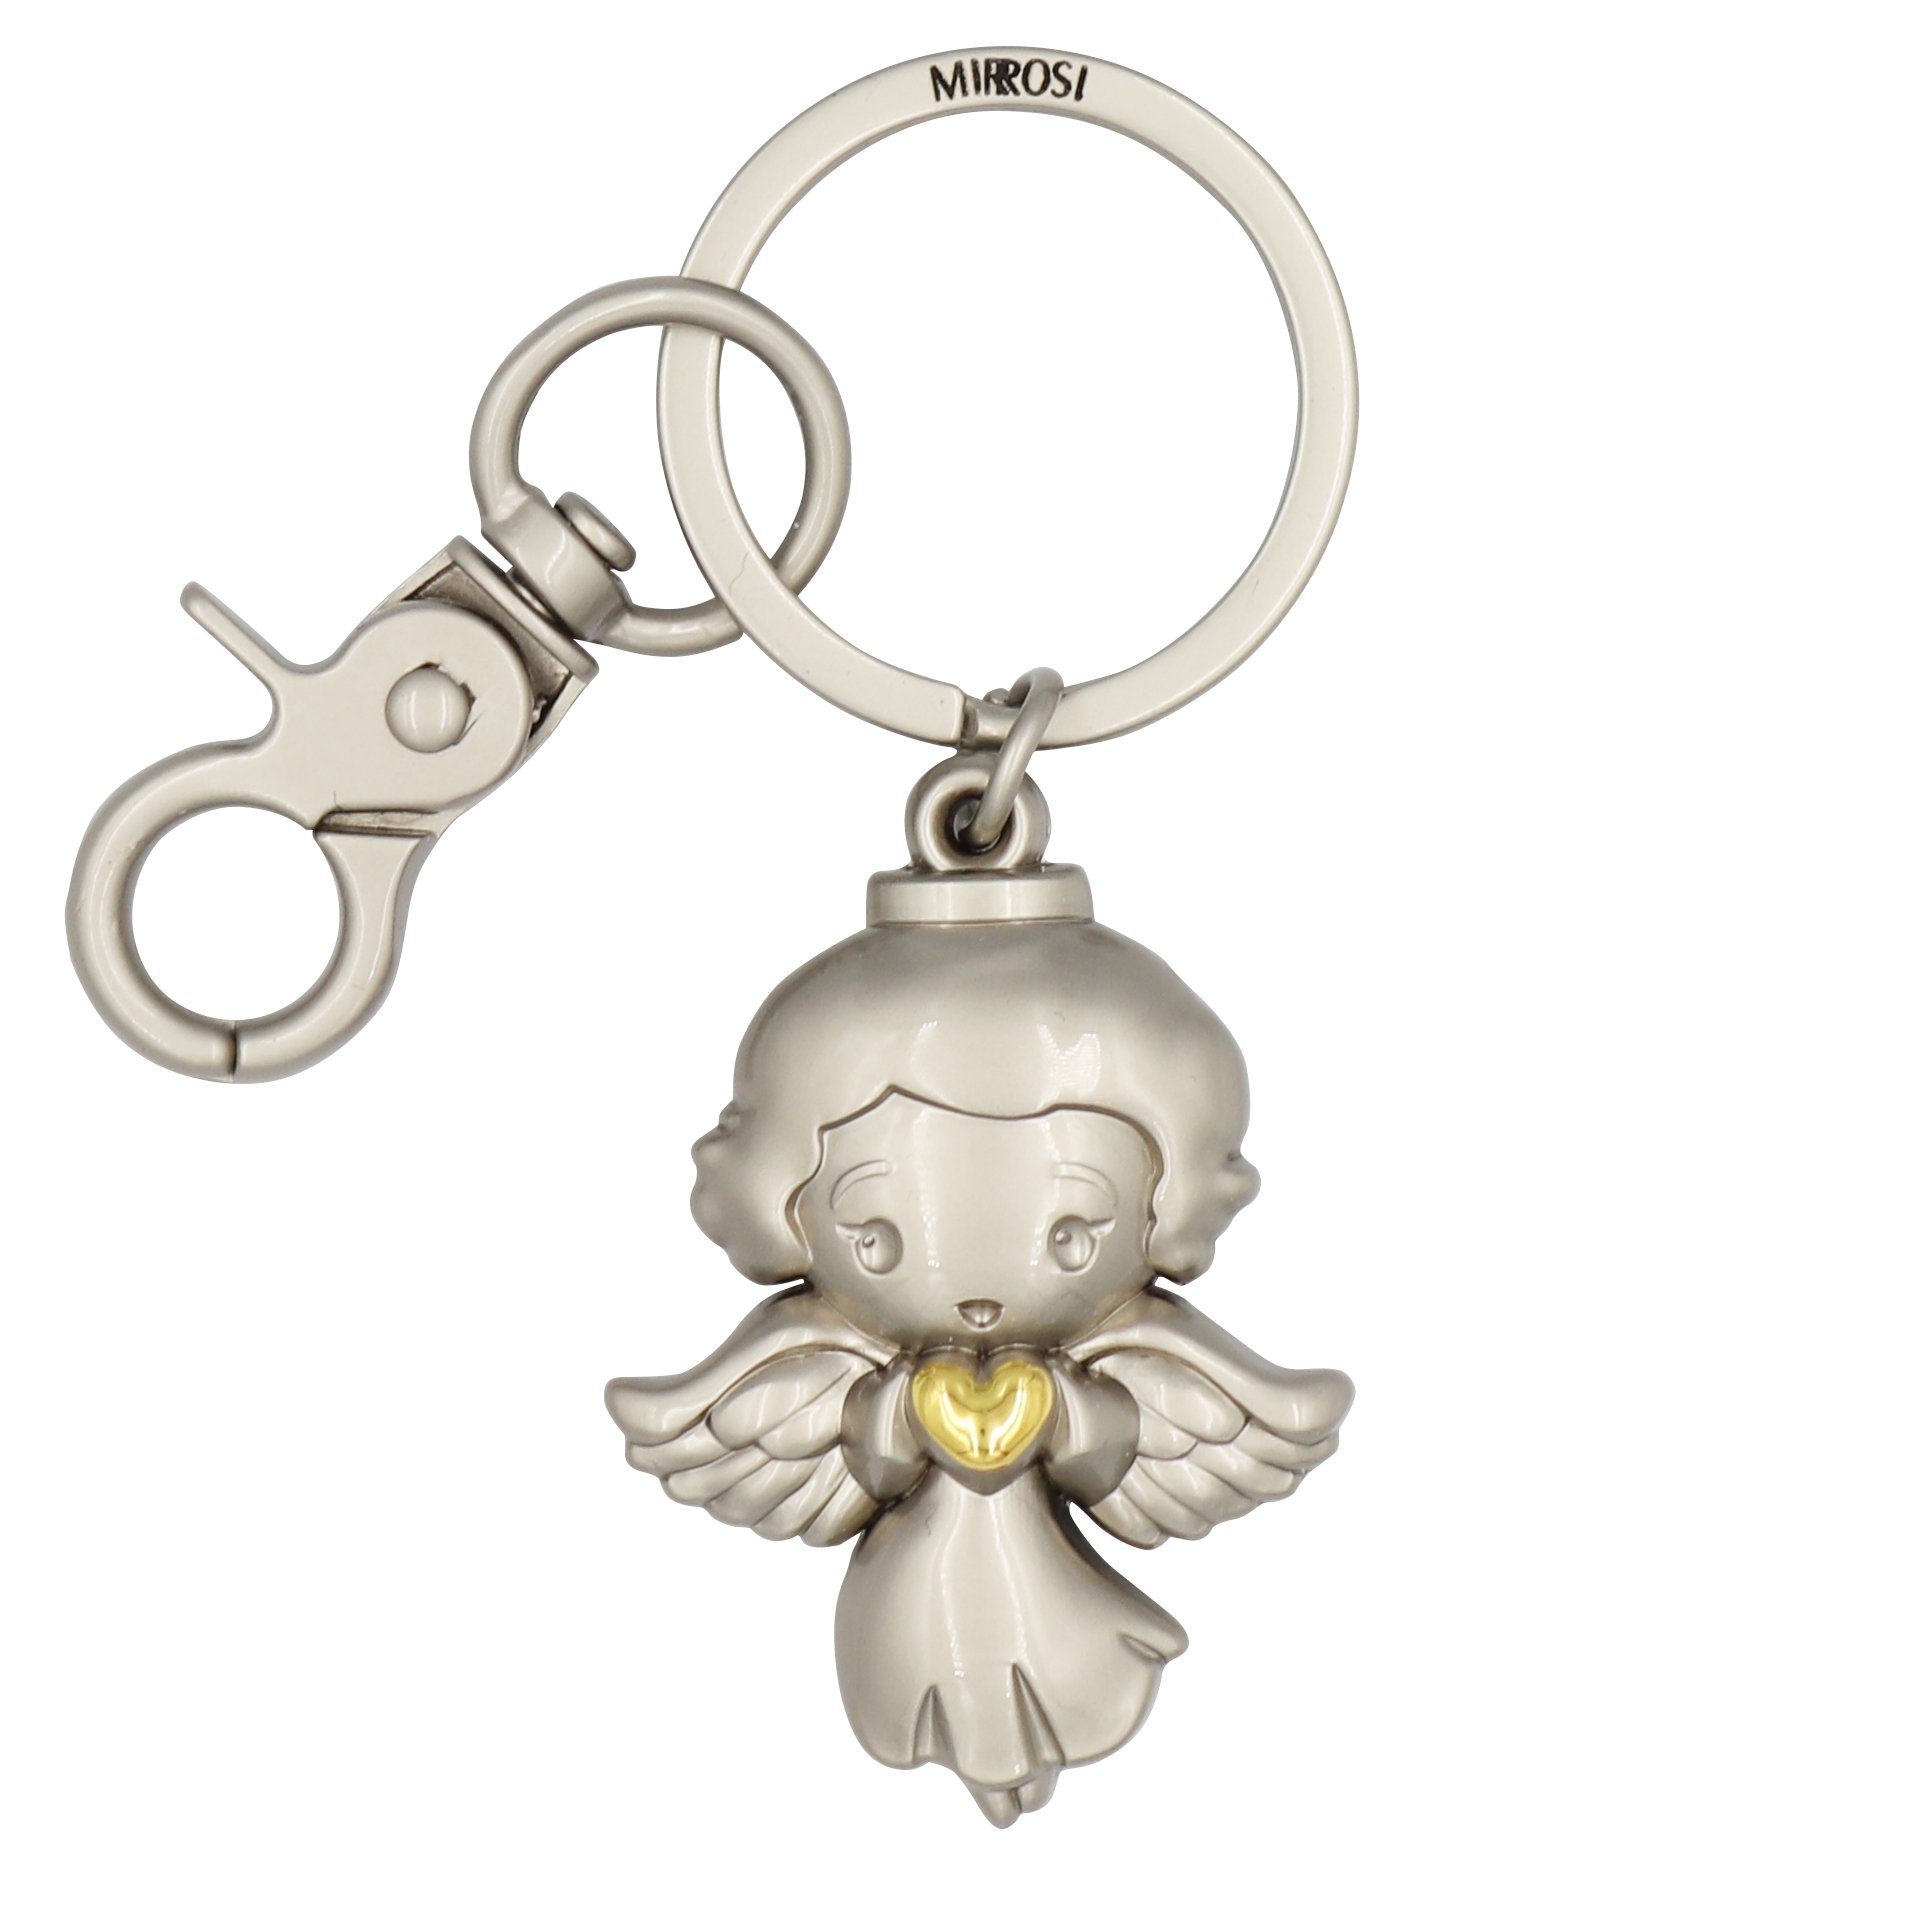 MIRROSI Schlüsselanhänger Schutzengel Engel "Elsa" mit Herzchen (Glückbringer aus Metall), mit praktischem Karabinerhaken Gold